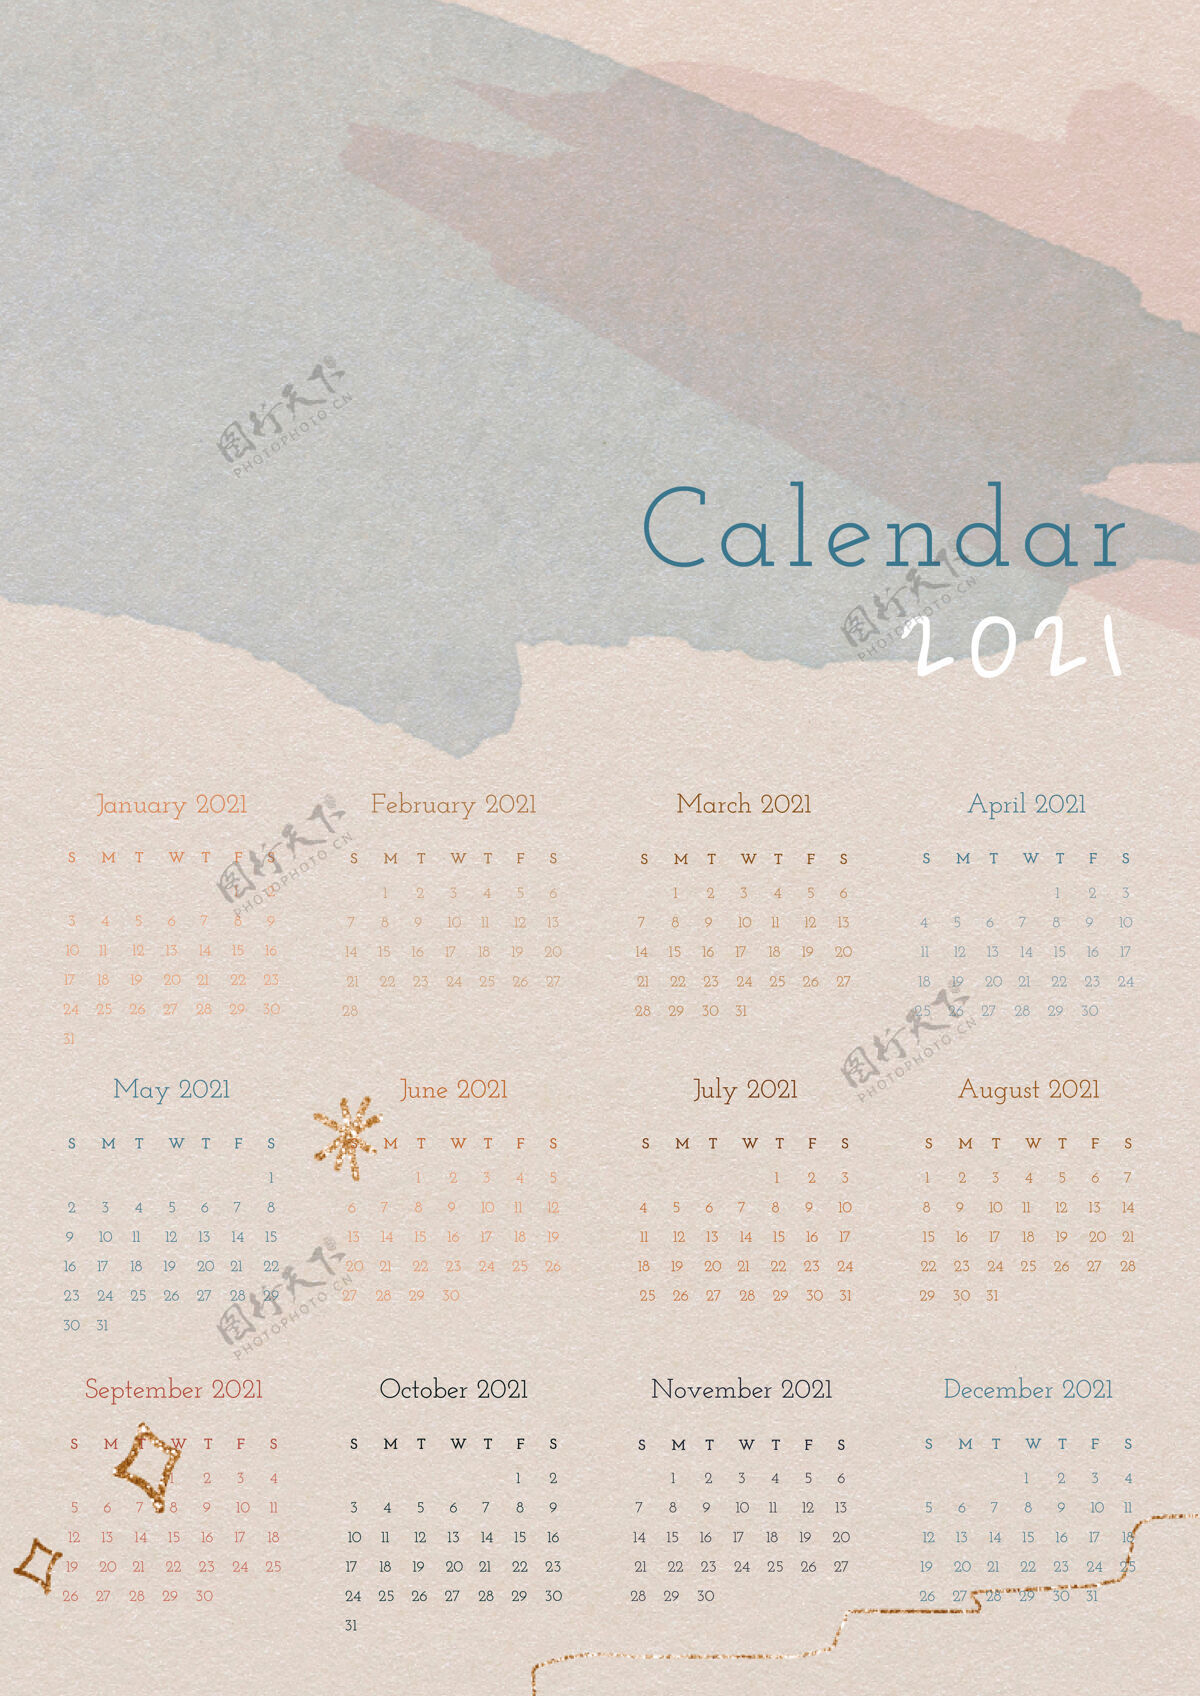 可爱的日历日历2021年与水彩纸纹理模板抽象月日历